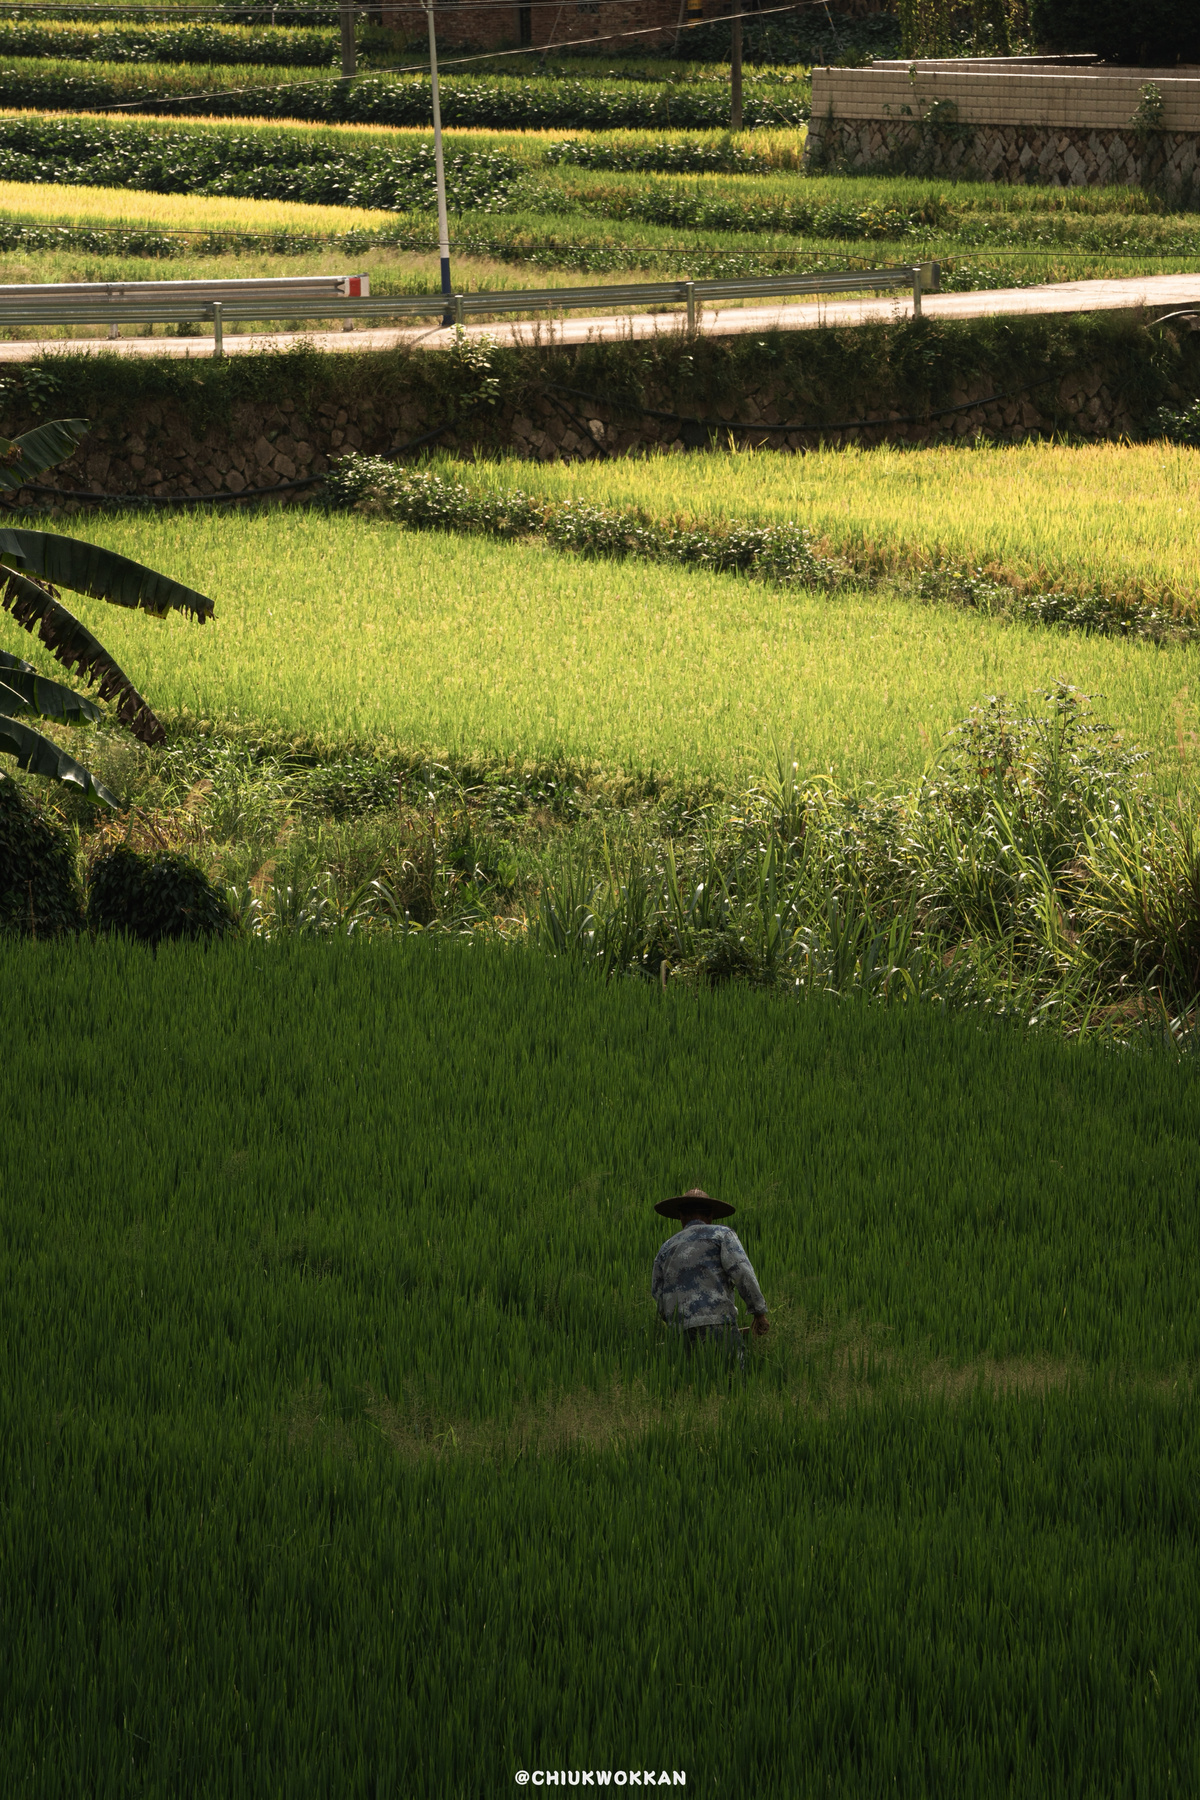 一个男人穿过一片绿色的稻田